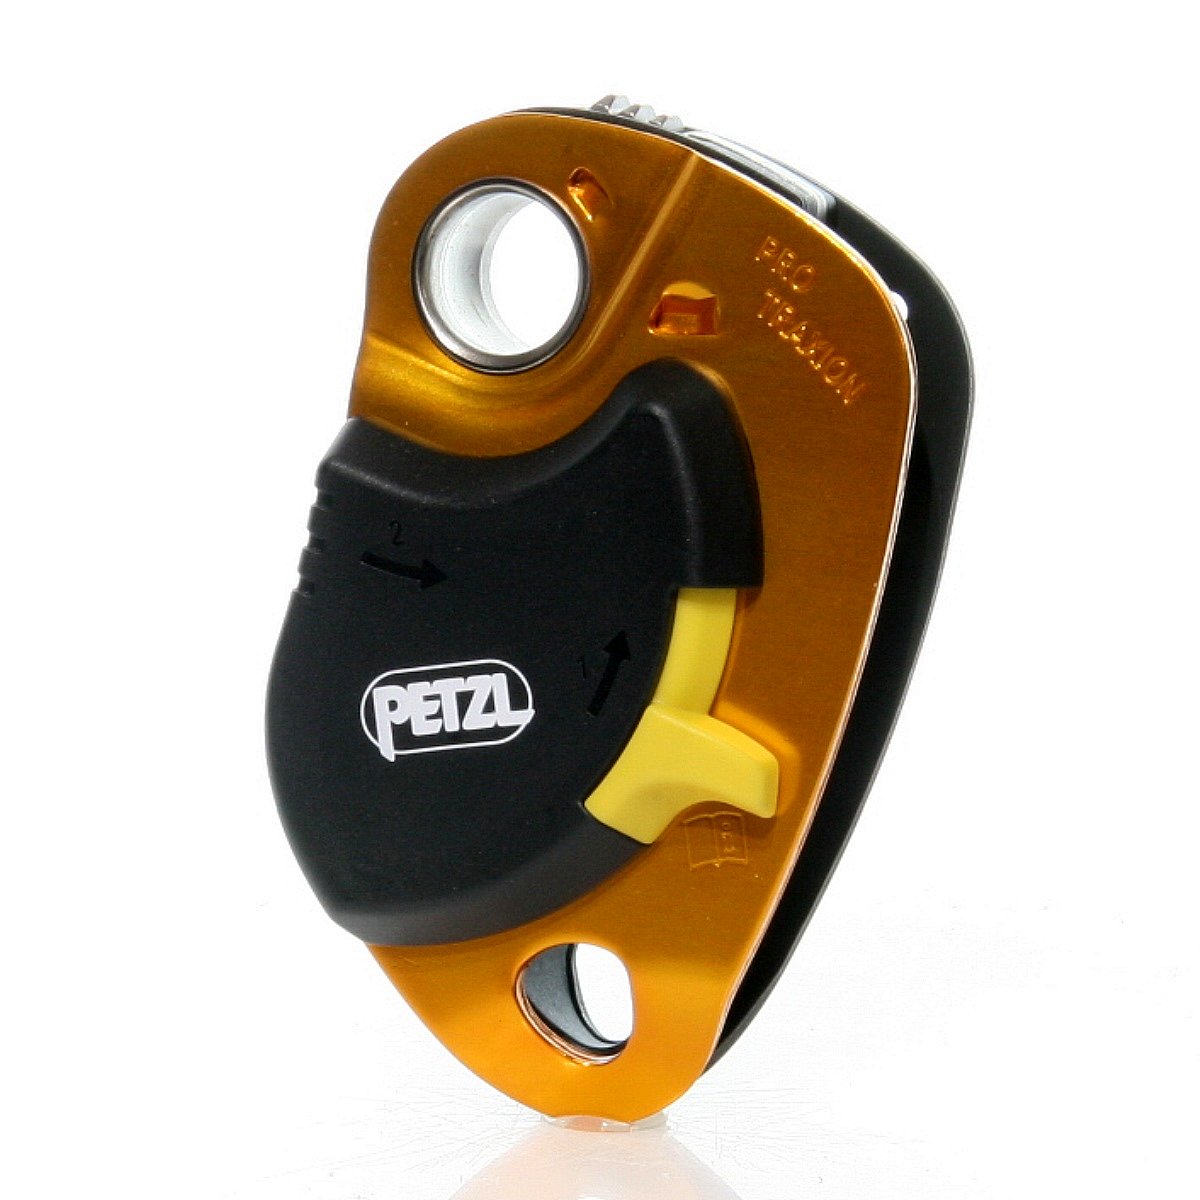 売れ筋商品 ペツル(PETZL) P51A プロトラクション 通販